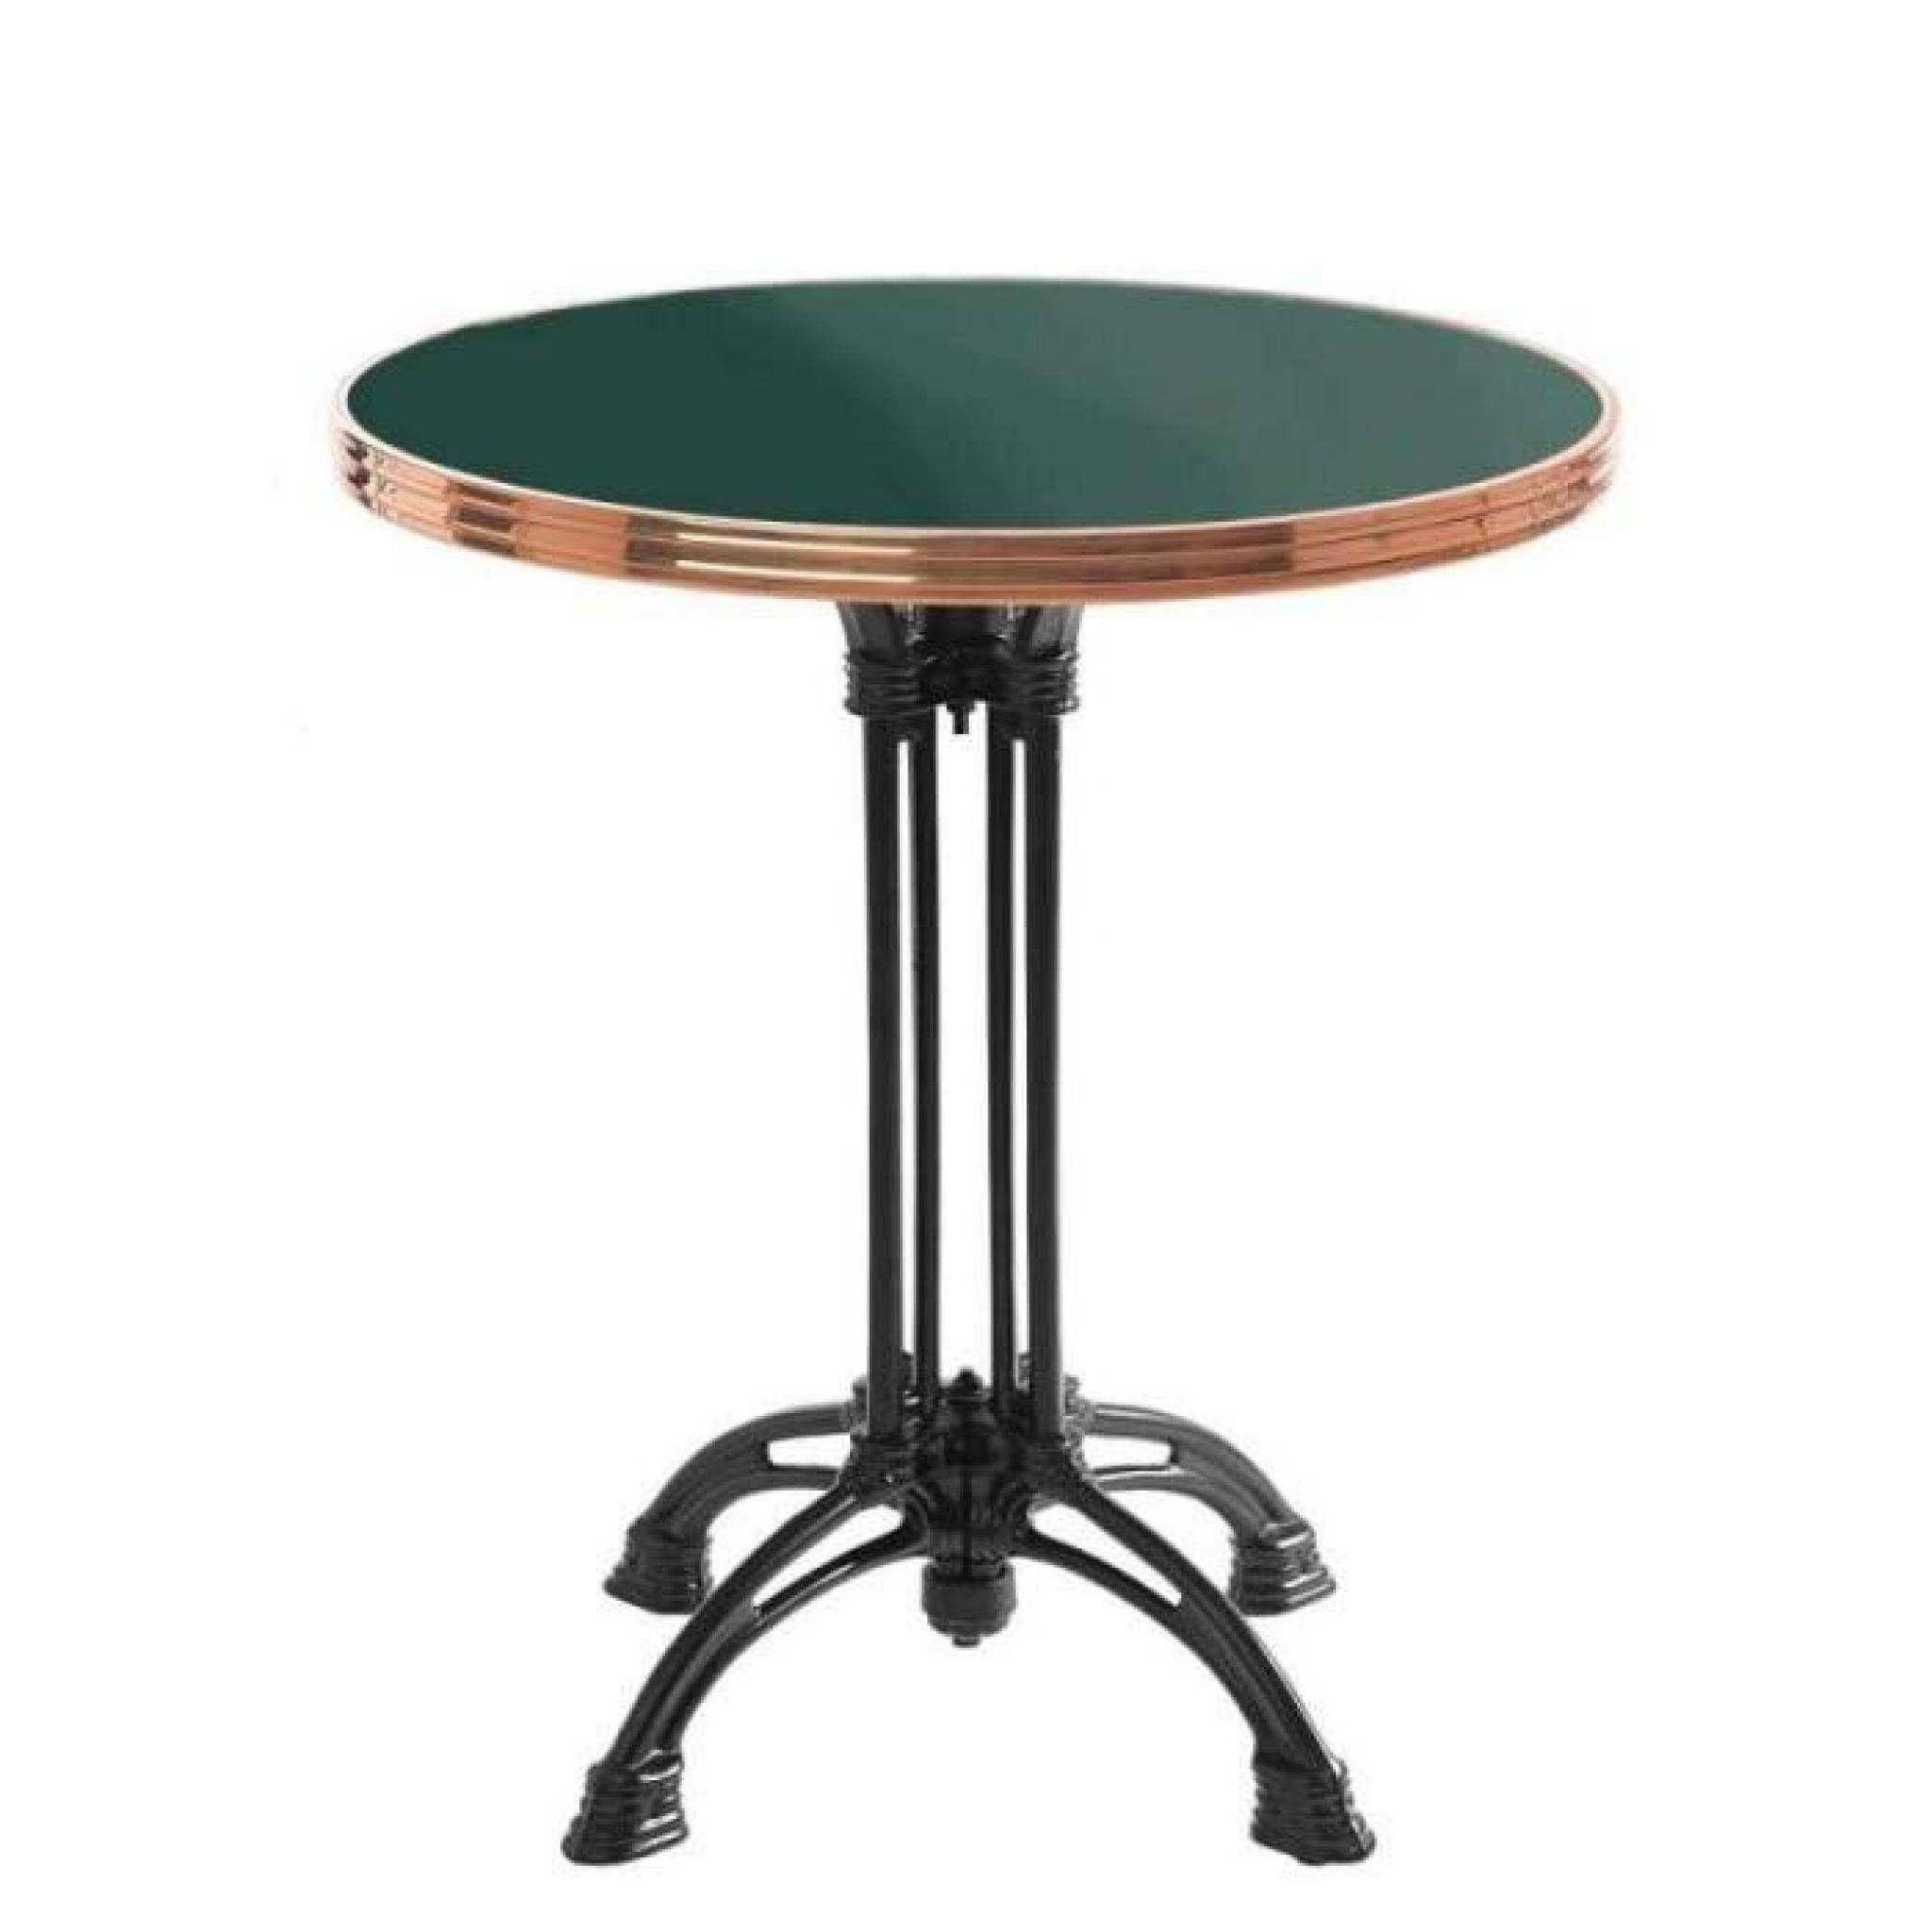 table bistrot ronde vert mousse avec cerclage en cuivre - pied 4 branches - h70 x d70 cm